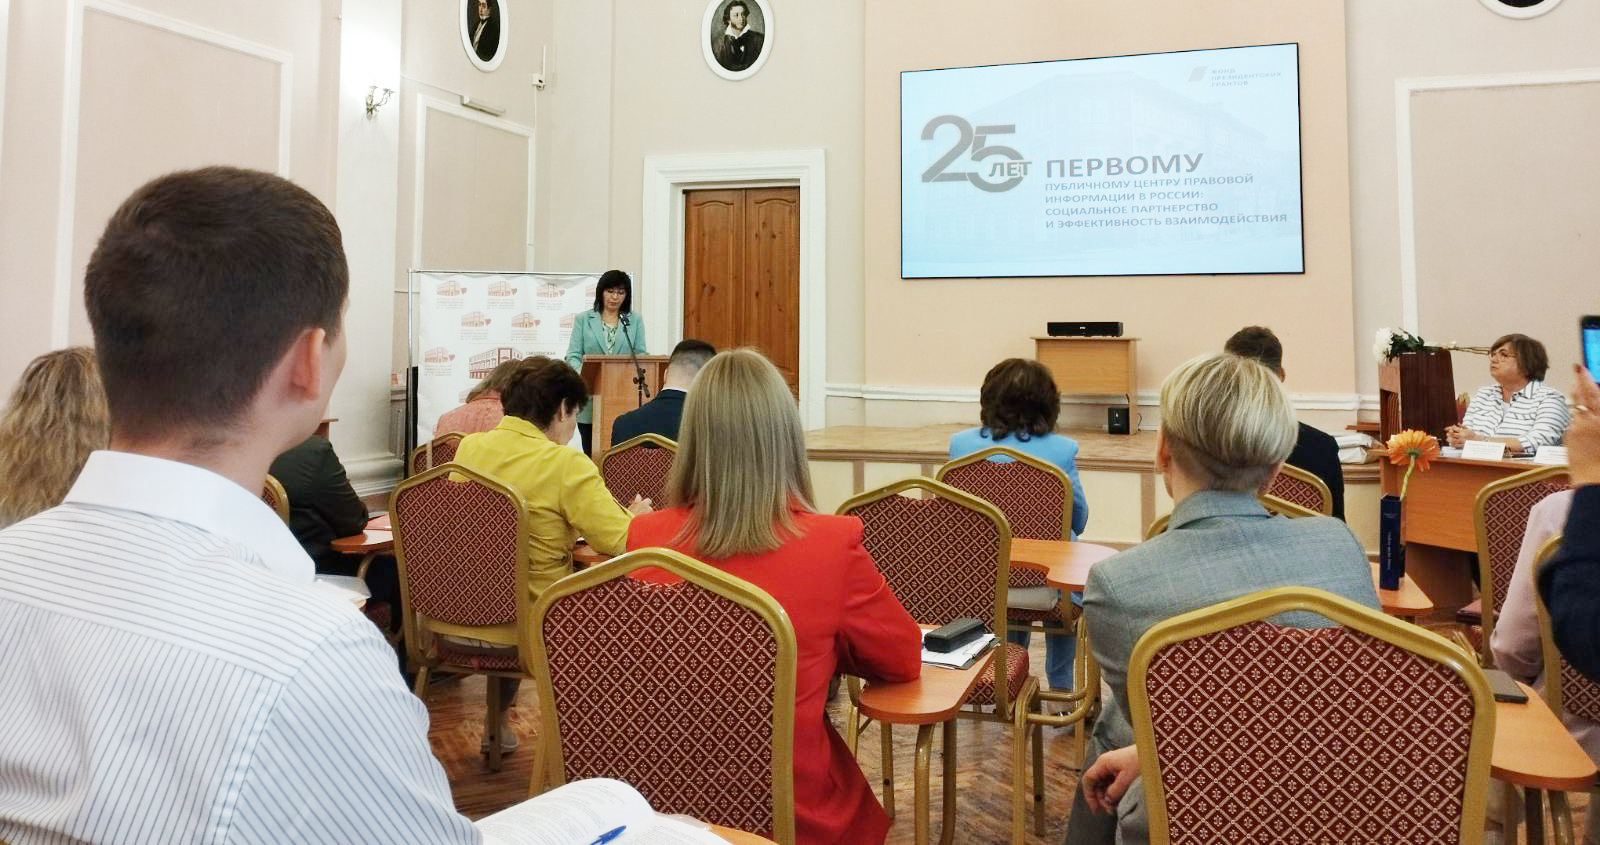 Международная научно-практическая конференция «25-лет Первому публичному Центру правовой информации в России: социальное партнерство и эффективность взаимодействия» 